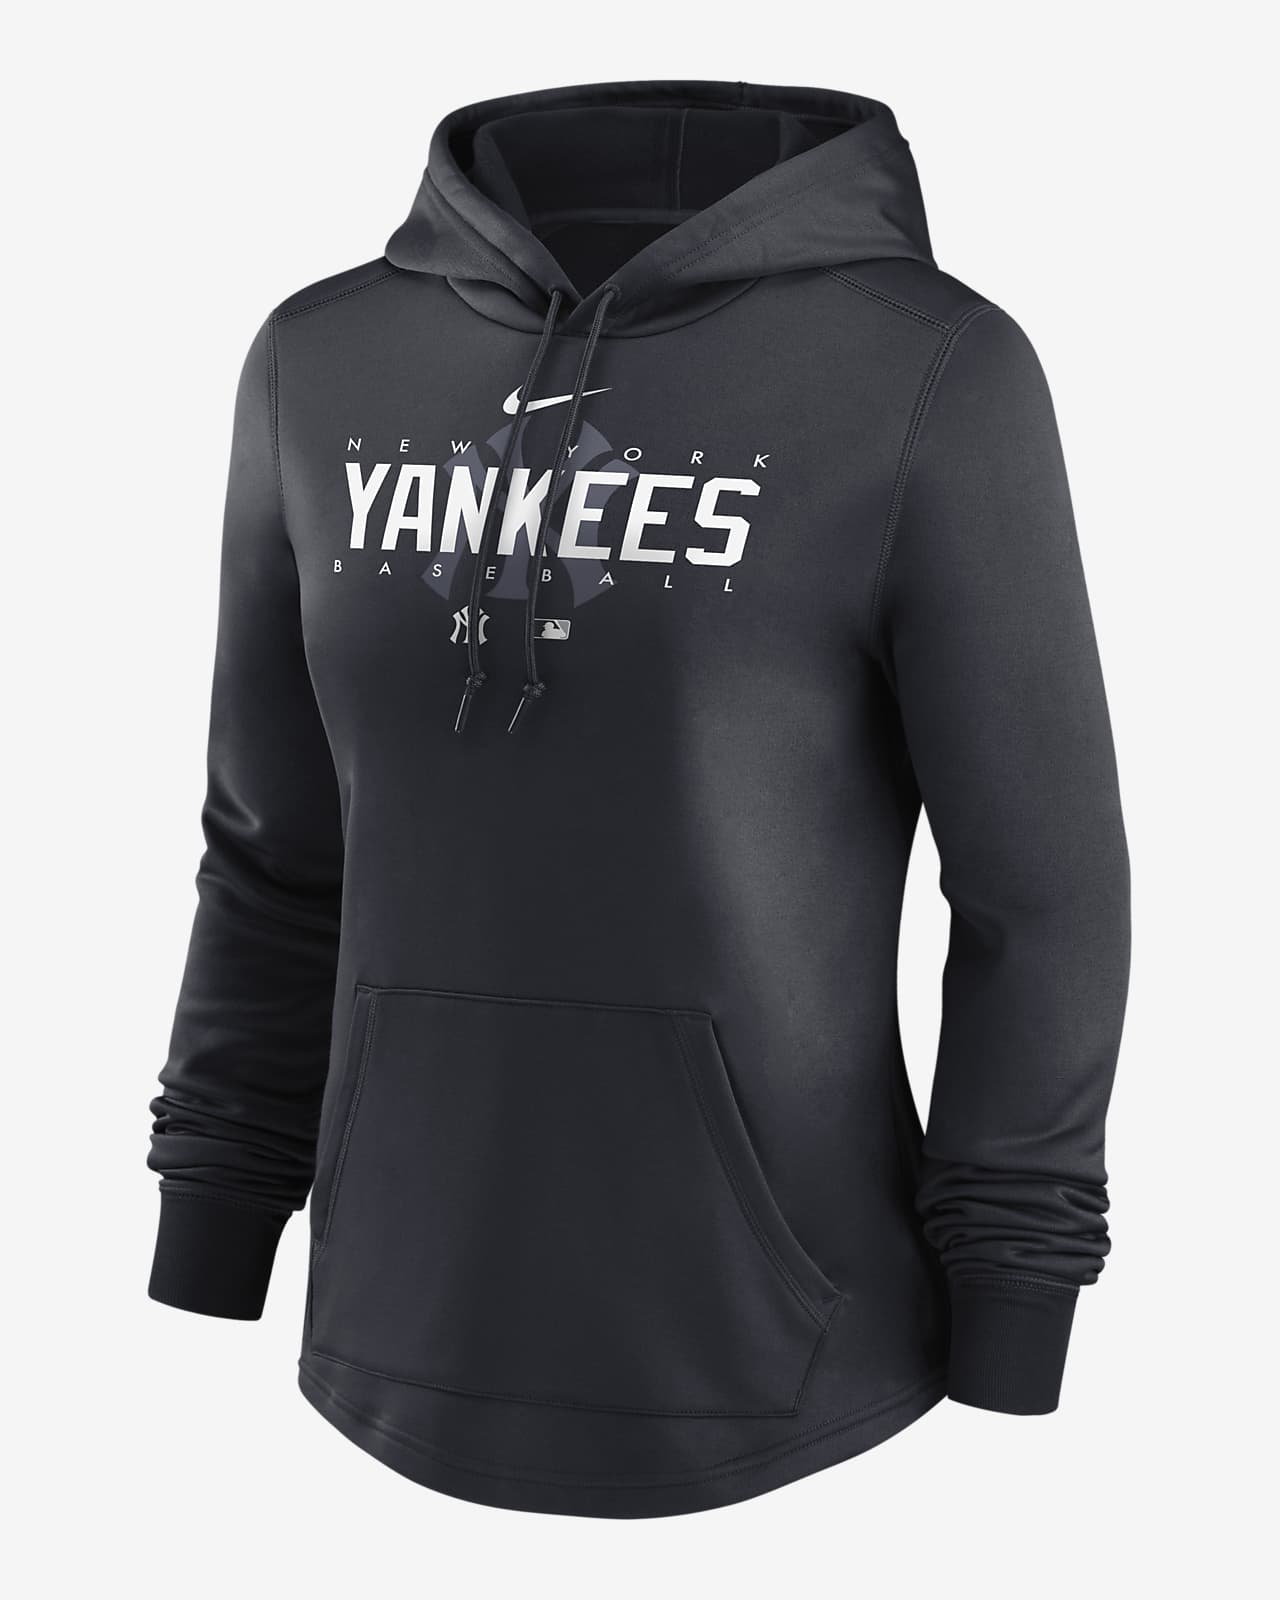 yankees nike hoodie